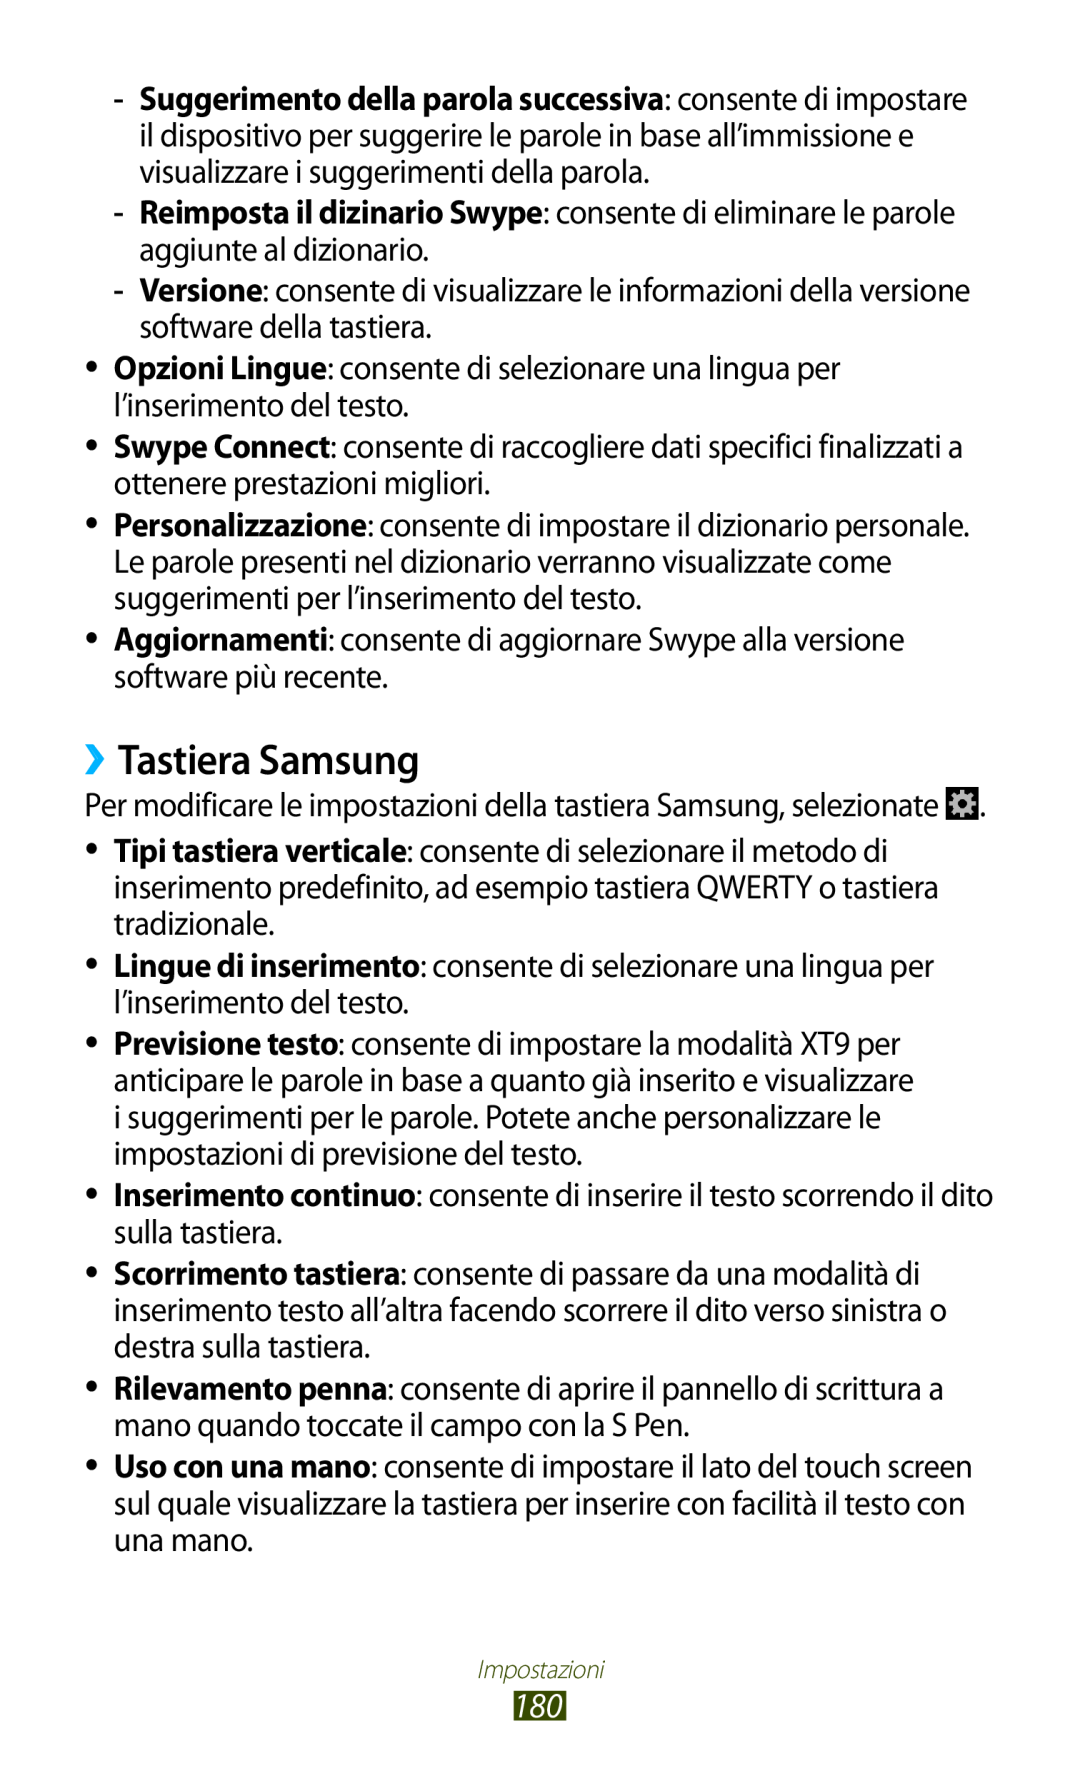 Samsung GT-N7000RWEITV manual ››Tastiera Samsung, Per modificare le impostazioni della tastiera Samsung, selezionate 